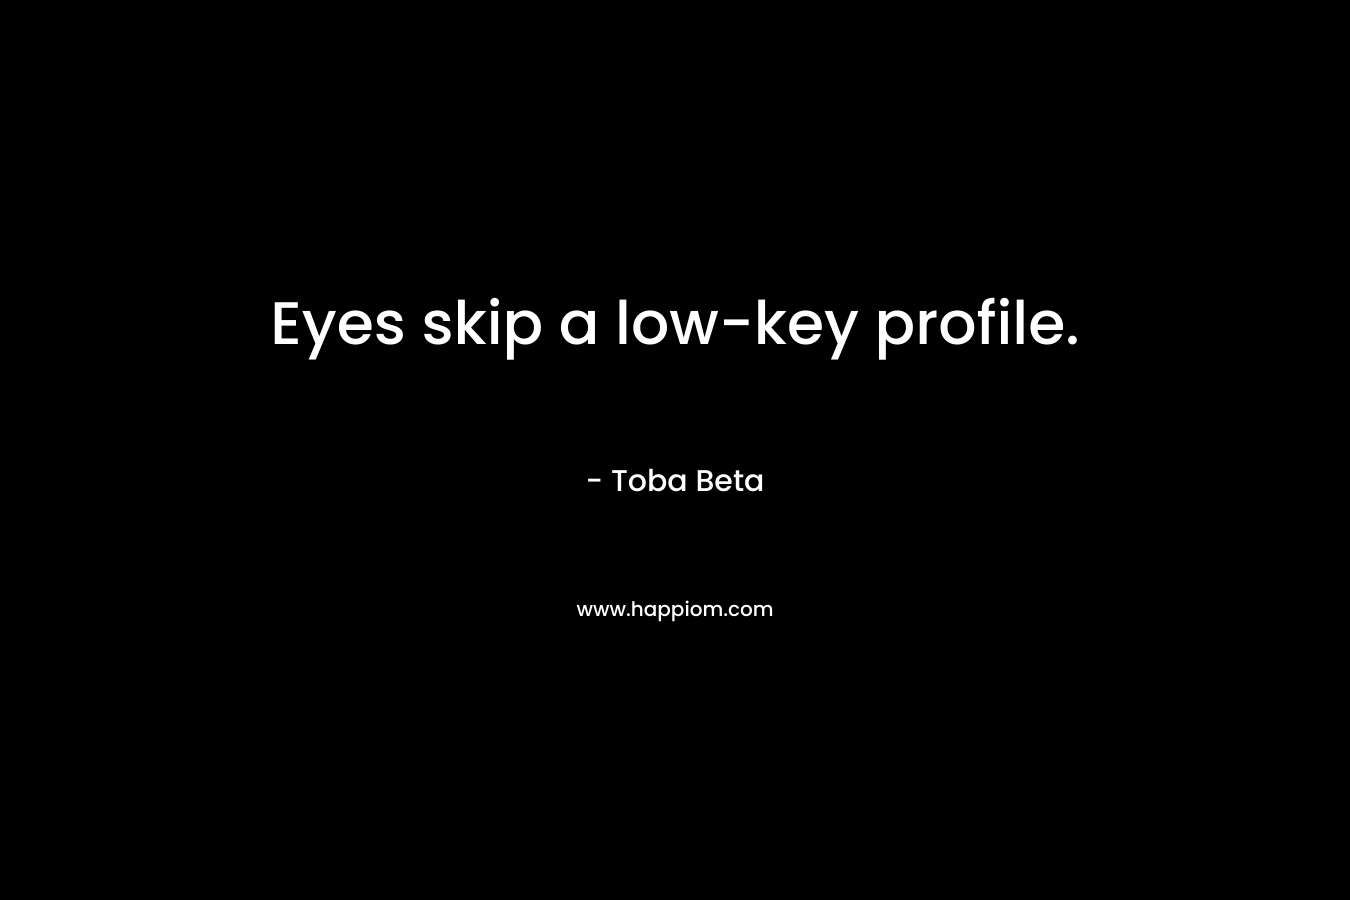 Eyes skip a low-key profile.